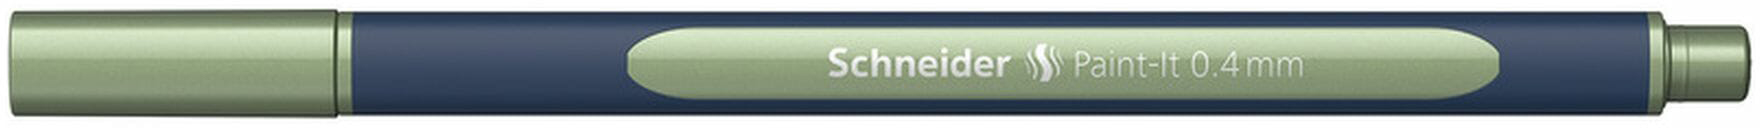 SCHNEIDER Roller Paint-it ML050011035 vintage green metallic vintage green metallic